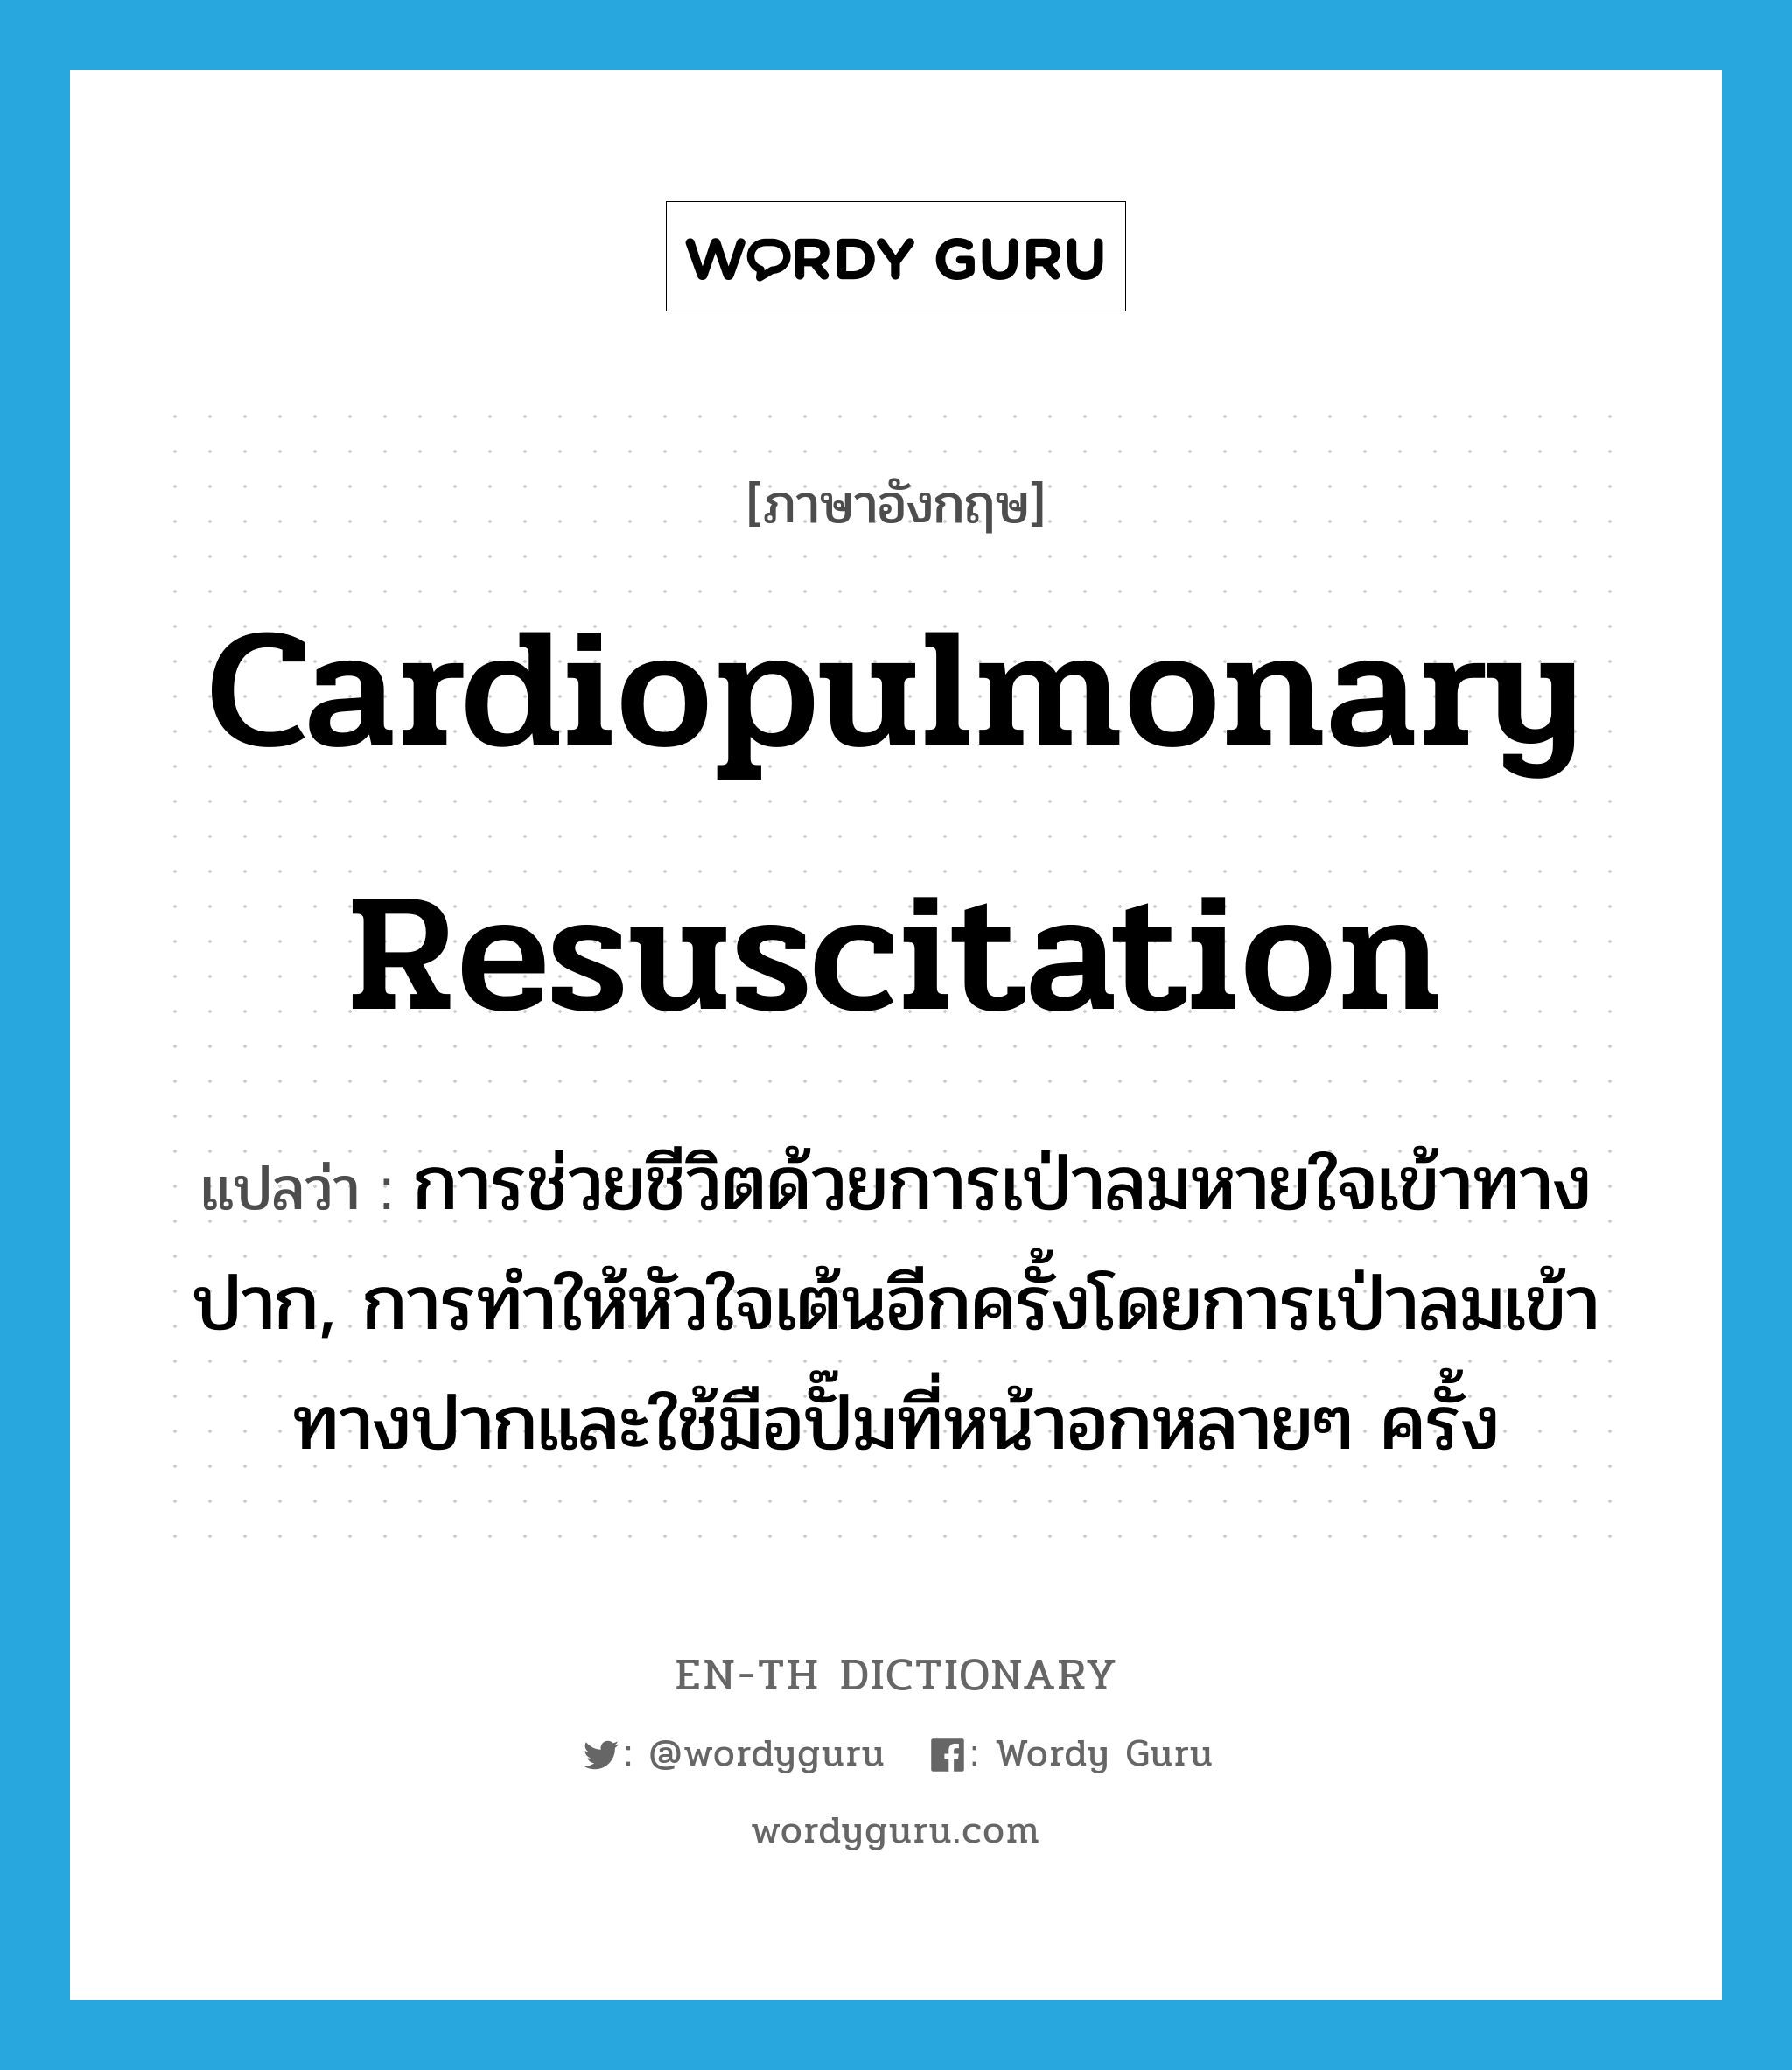 cardiopulmonary resuscitation แปลว่า?, คำศัพท์ภาษาอังกฤษ cardiopulmonary resuscitation แปลว่า การช่วยชีวิตด้วยการเป่าลมหายใจเข้าทางปาก, การทำให้หัวใจเต้นอีกครั้งโดยการเป่าลมเข้าทางปากและใช้มือปั๊มที่หน้าอกหลายๆ ครั้ง ประเภท N หมวด N